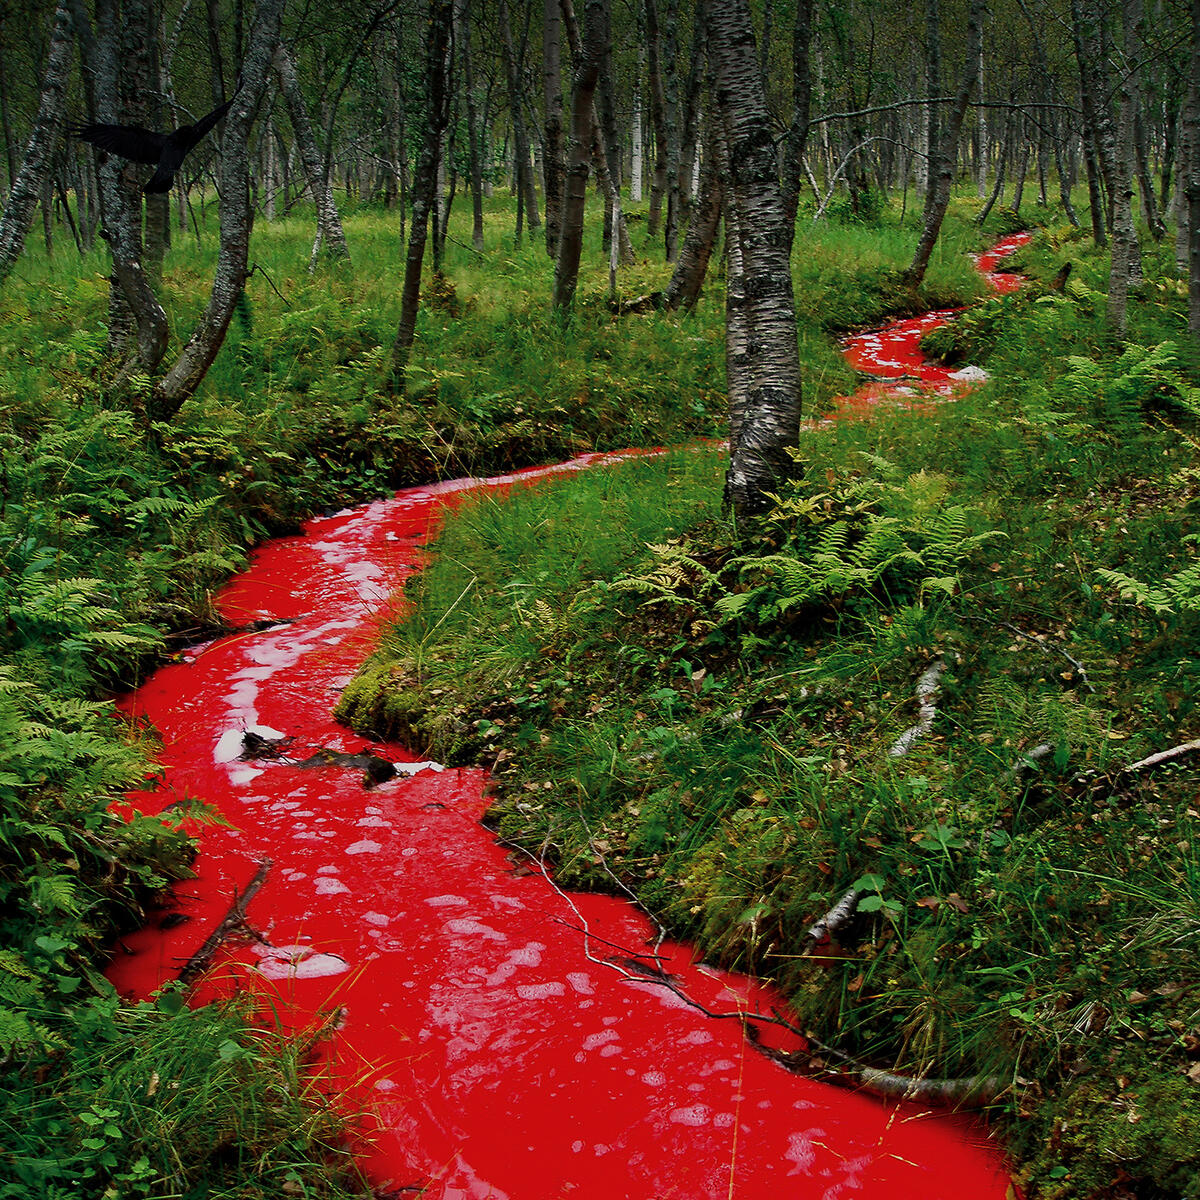 En rød elv svinger gjennom en skog med bjørkestammer og grønn skogbunn. En svart fugl skimtes i venstre hjørne. Fotografi.